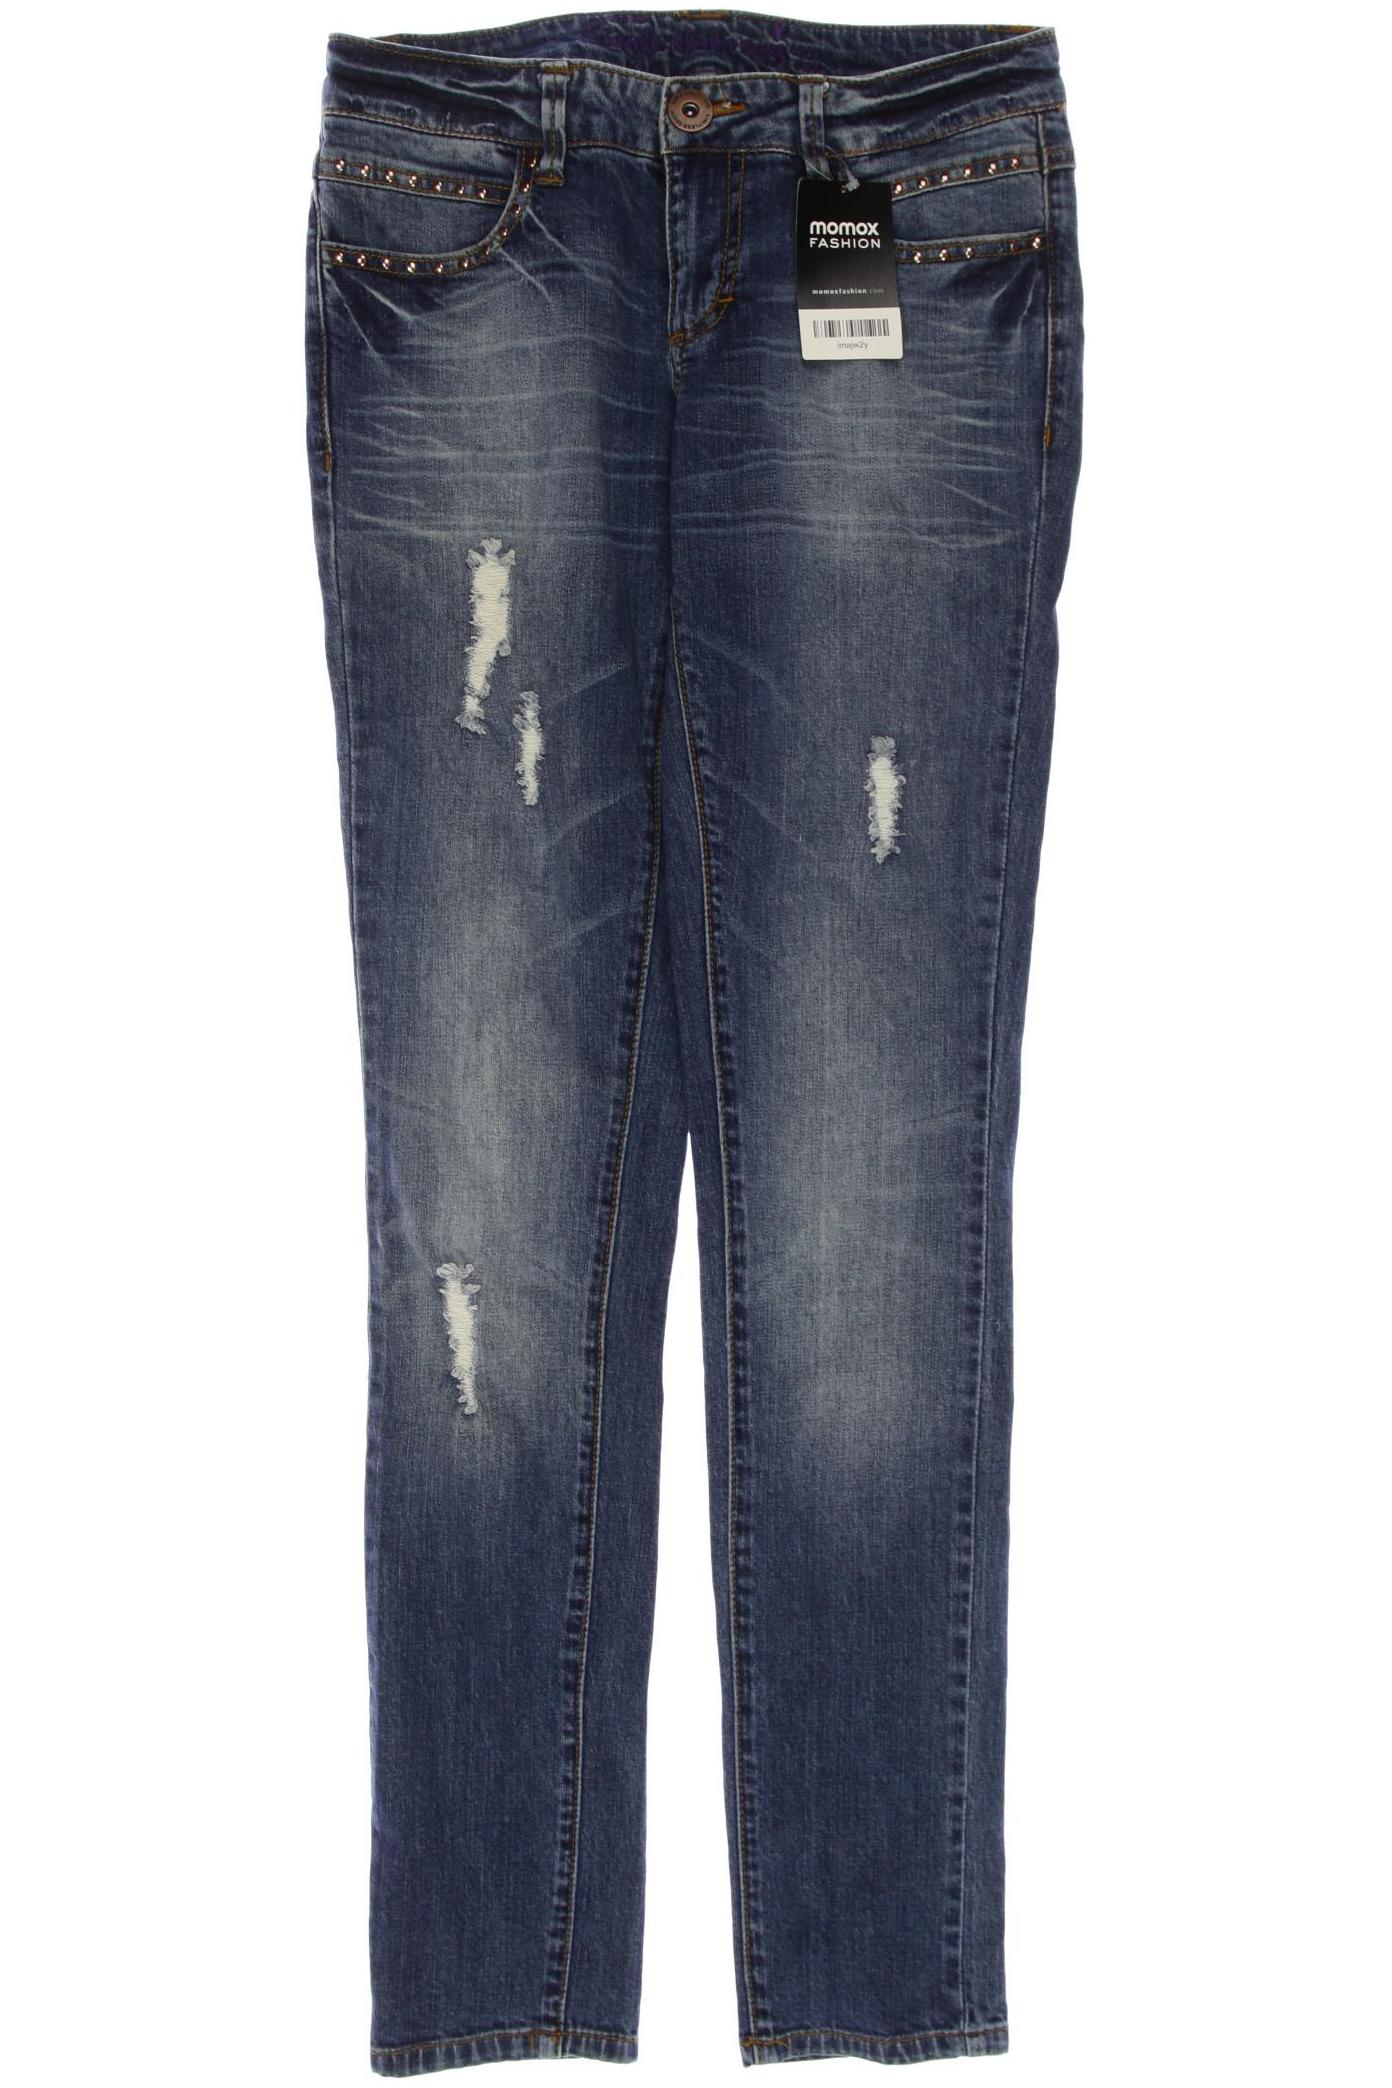 H&M Damen Jeans, blau, Gr. 38 von H&M